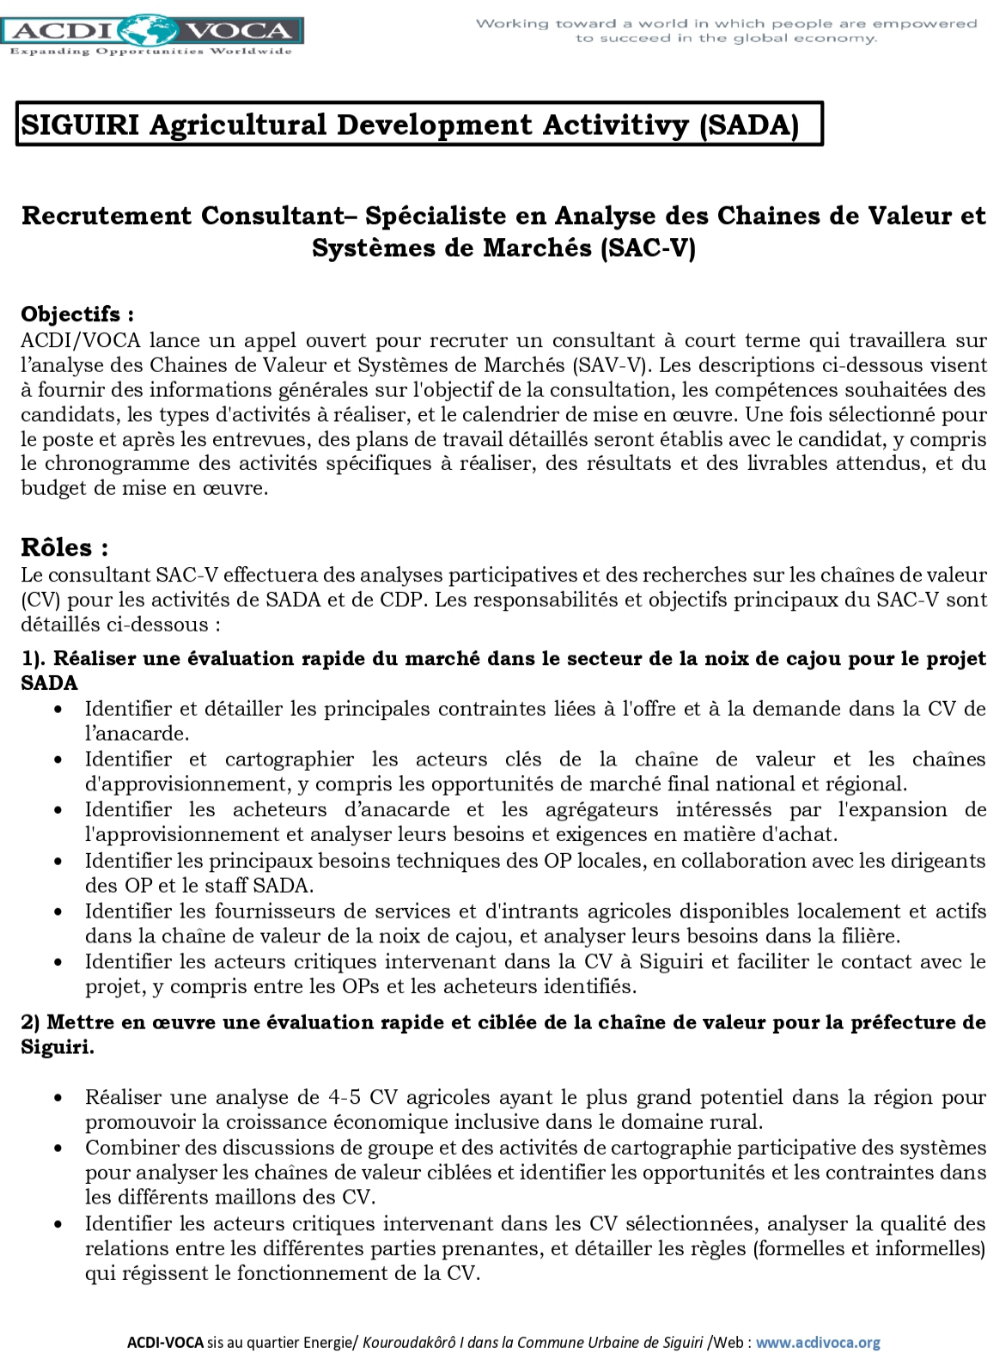 ACDI/VOCA – Avis de recrutement d’un Consultant – Spécialiste en Analyse des Chaines de Valeur et Systèmes de Marchés (SAC-V) p1